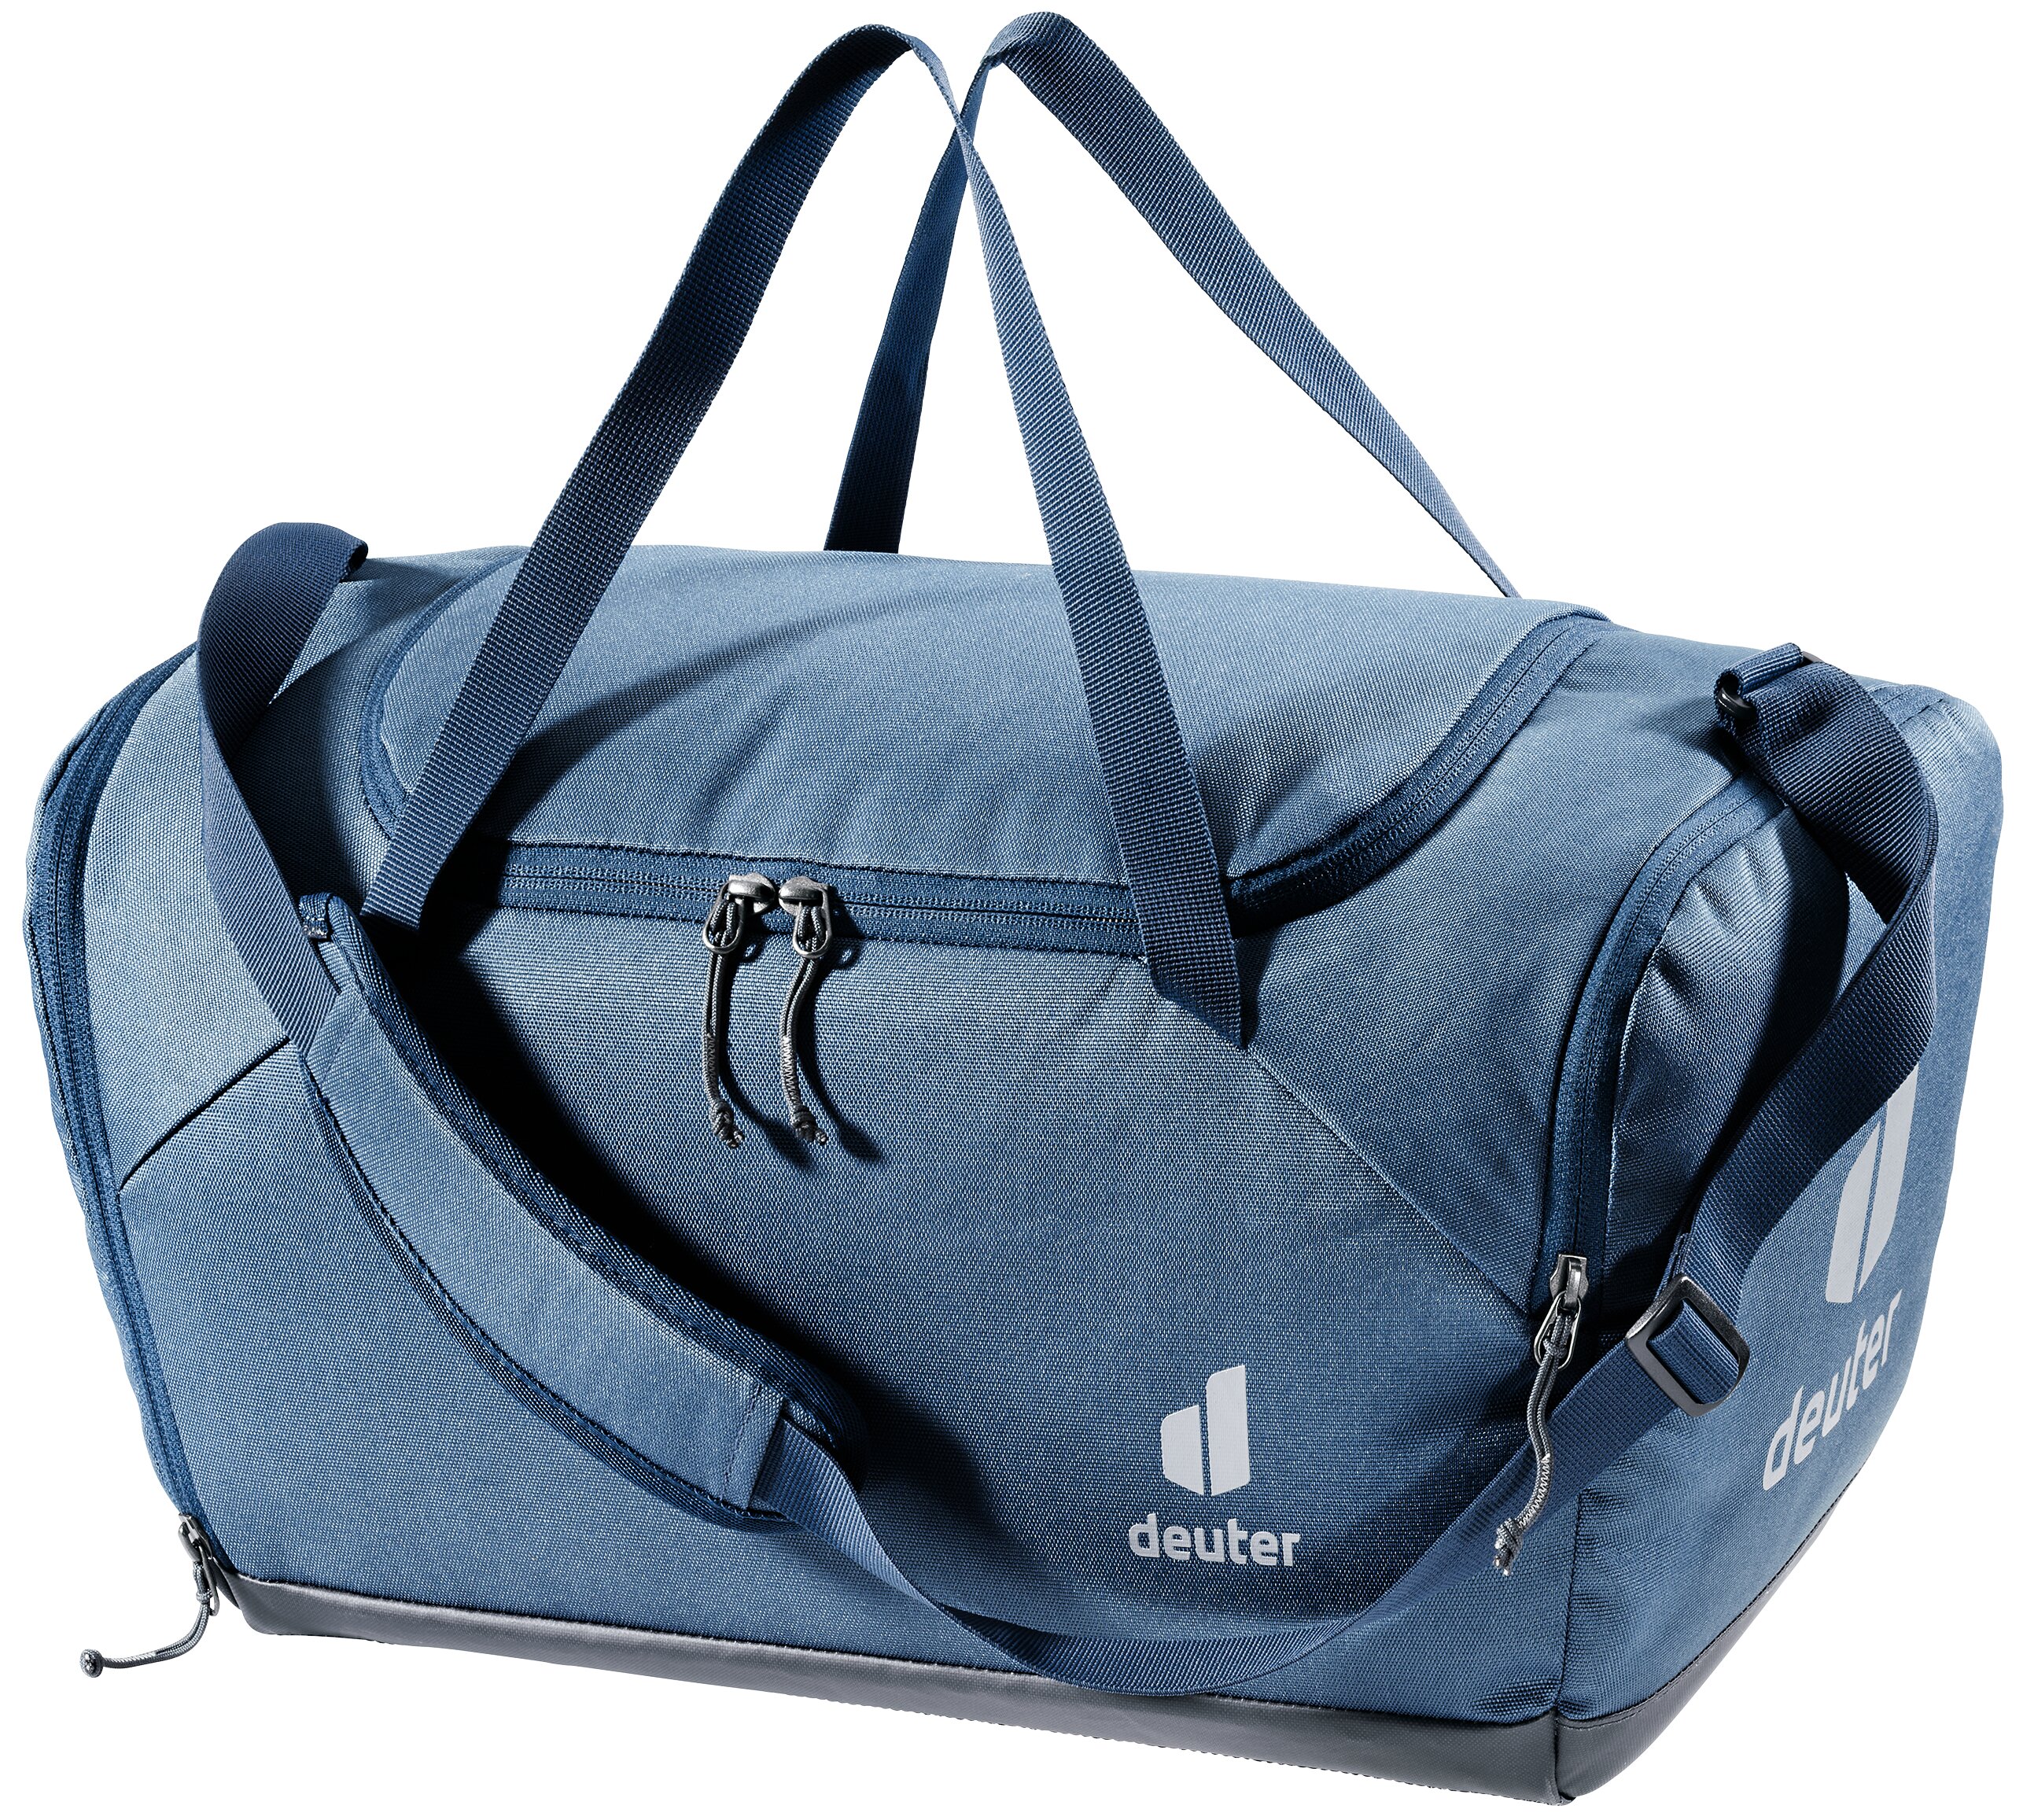 Deuter  Hopper - Duffle Bag - Blau (Marine/Graphite)